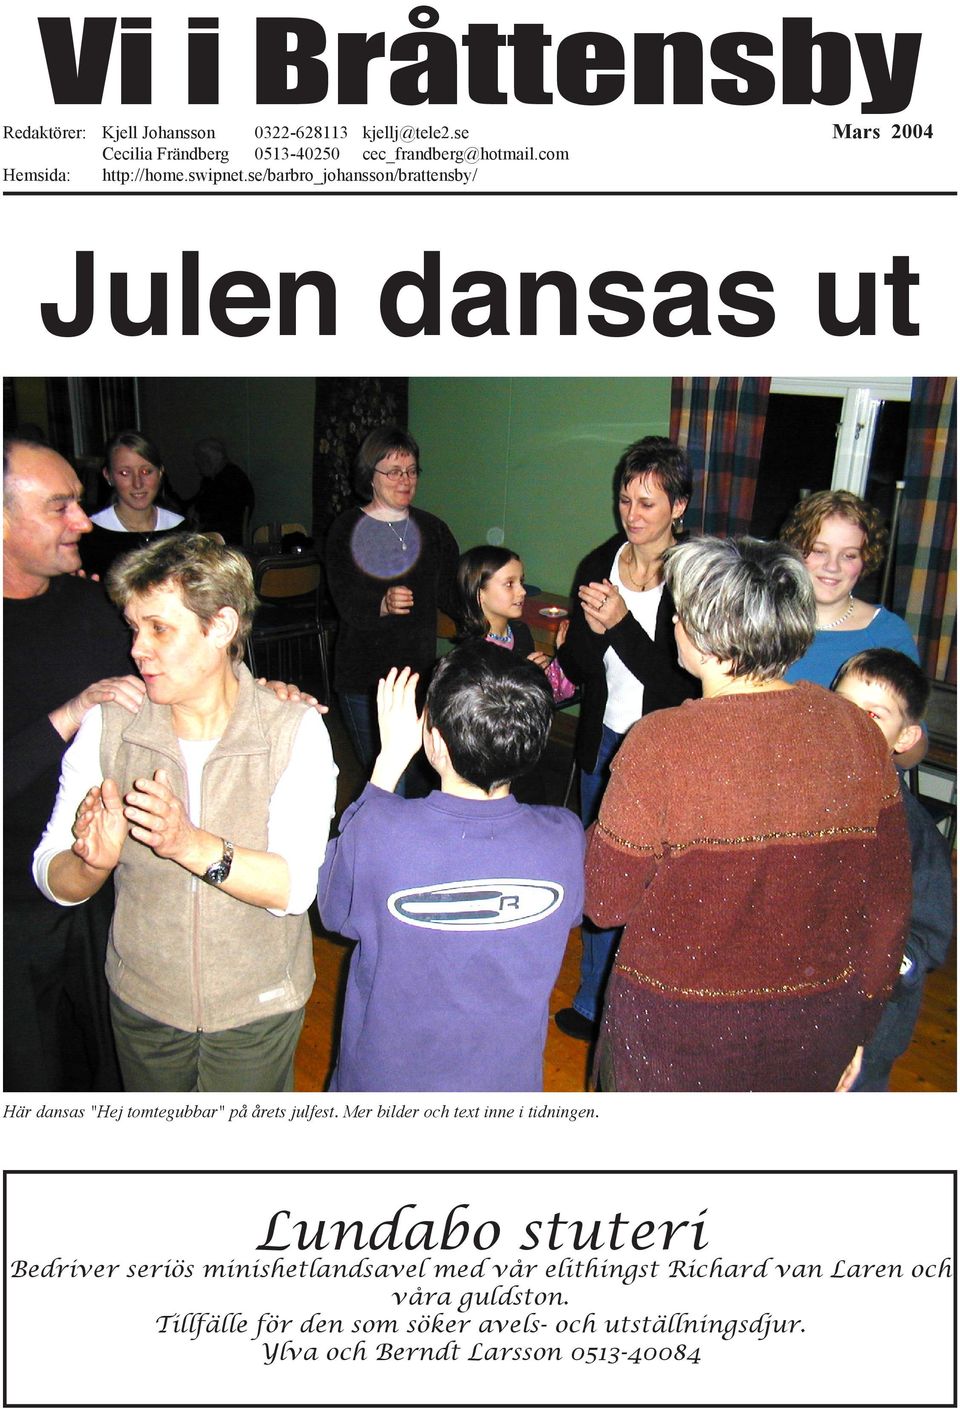 se/barbro_johansson/brattensby/ Mars 2004 Julen dansas ut Här dansas "Hej tomtegubbar" på årets julfest.